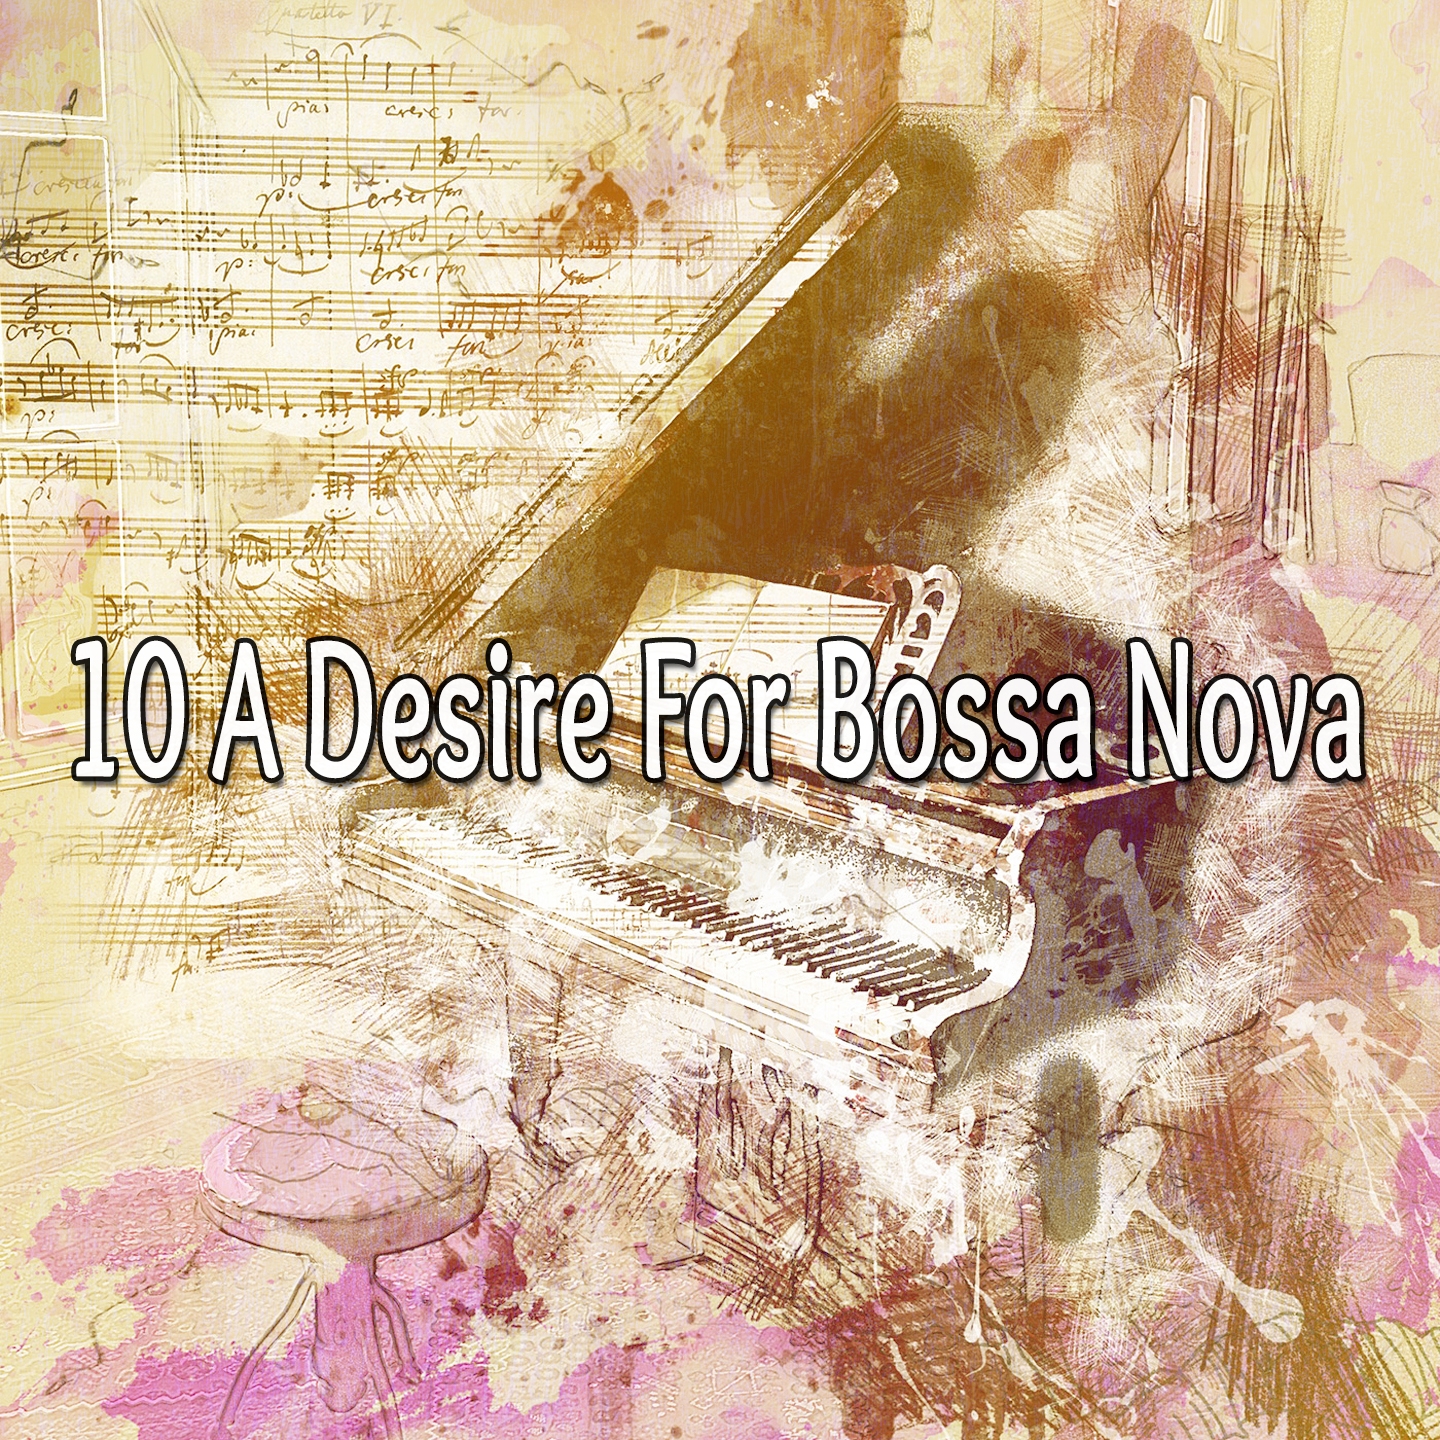 10 A Desire for Bossa Nova